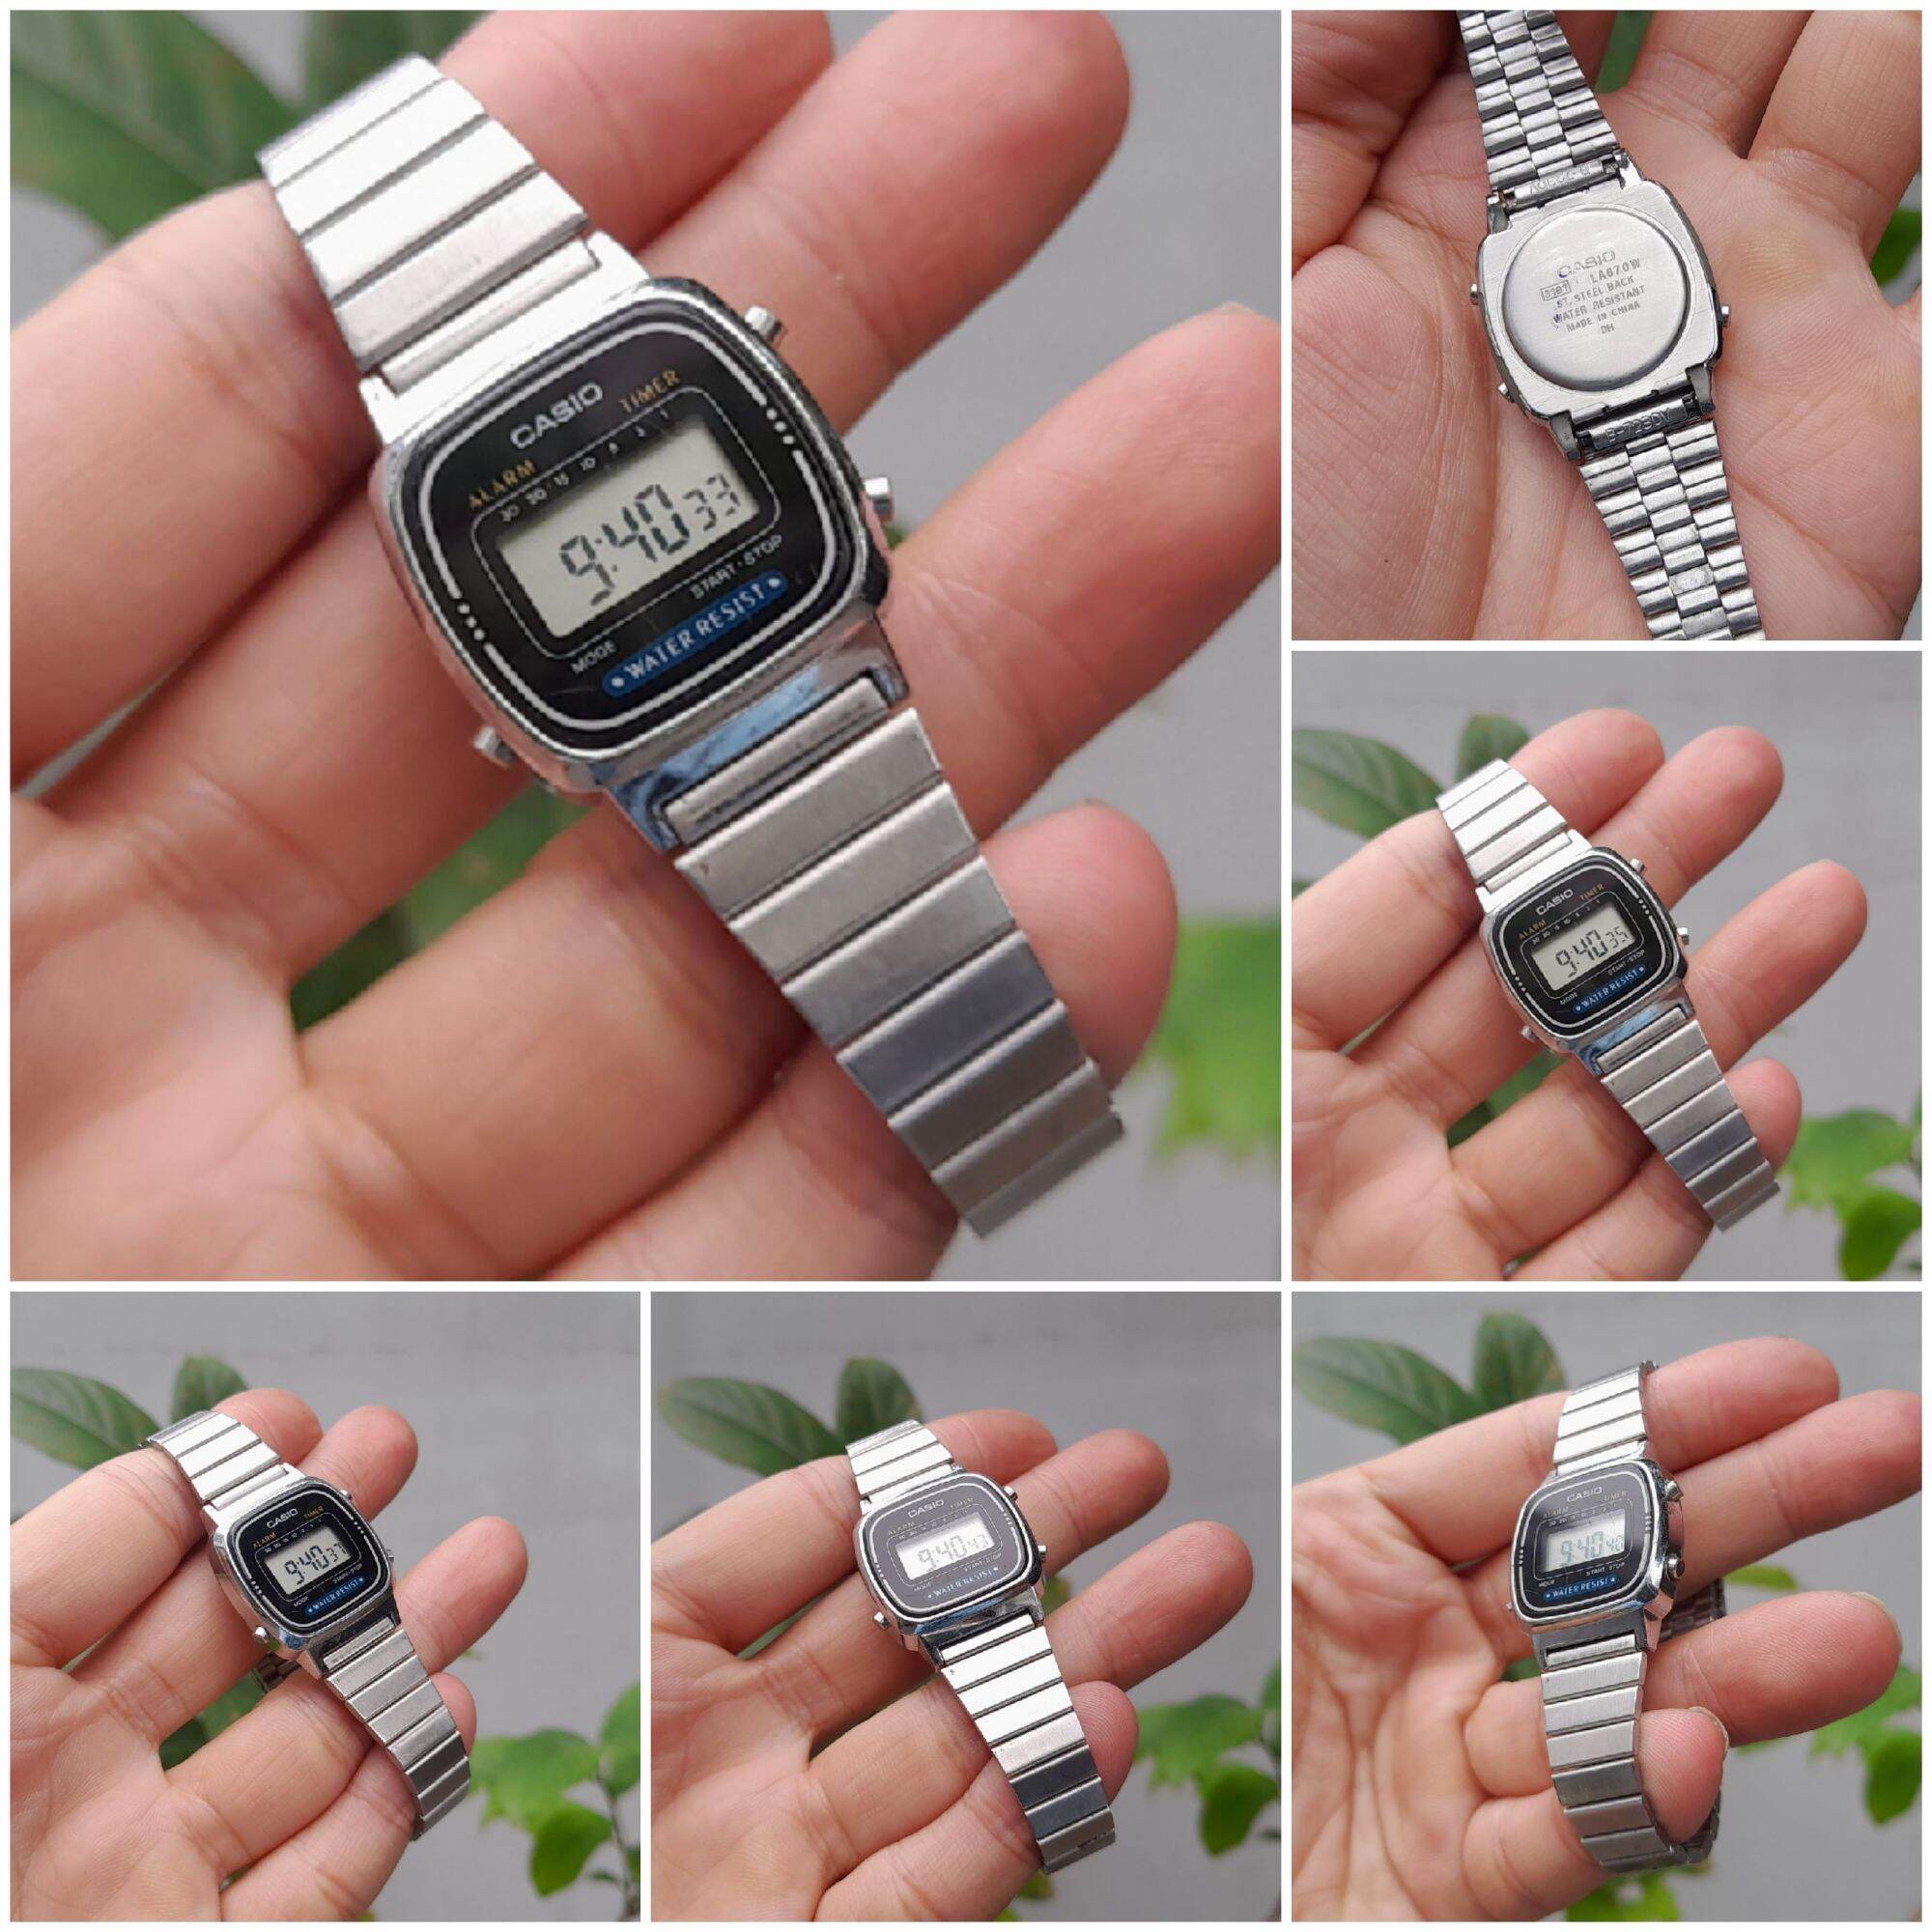 Đồng hồ Casio LA670W cho NỮ nhỏ xinh đáng yêu